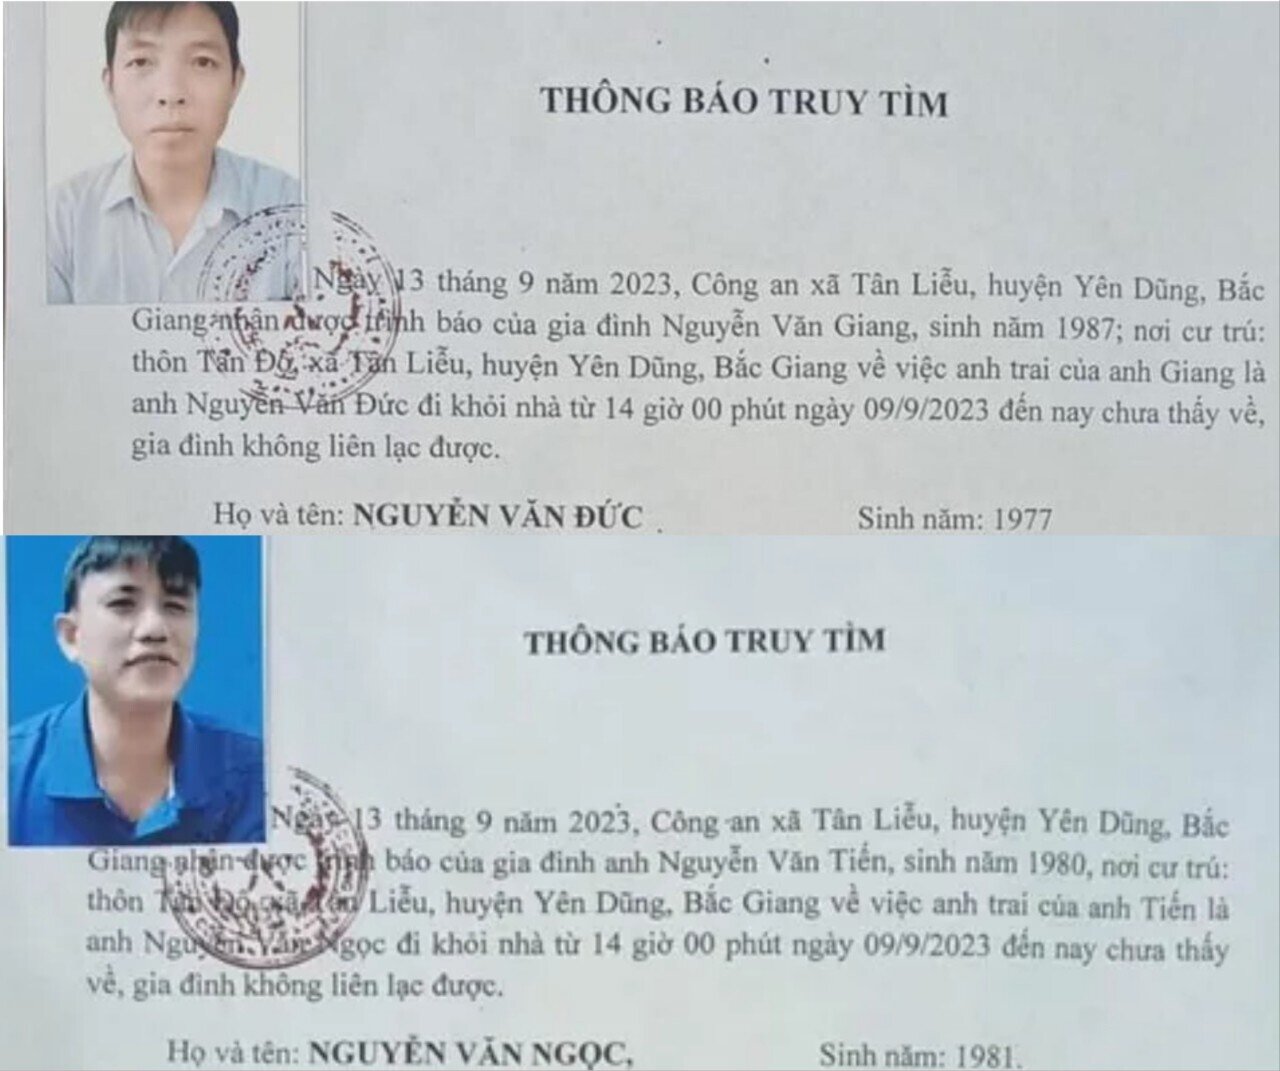 Công an xã Tân Liễu thông báo truy tìm ông Nguyễn Văn Đức và Nguyễn Văn Ngọc.